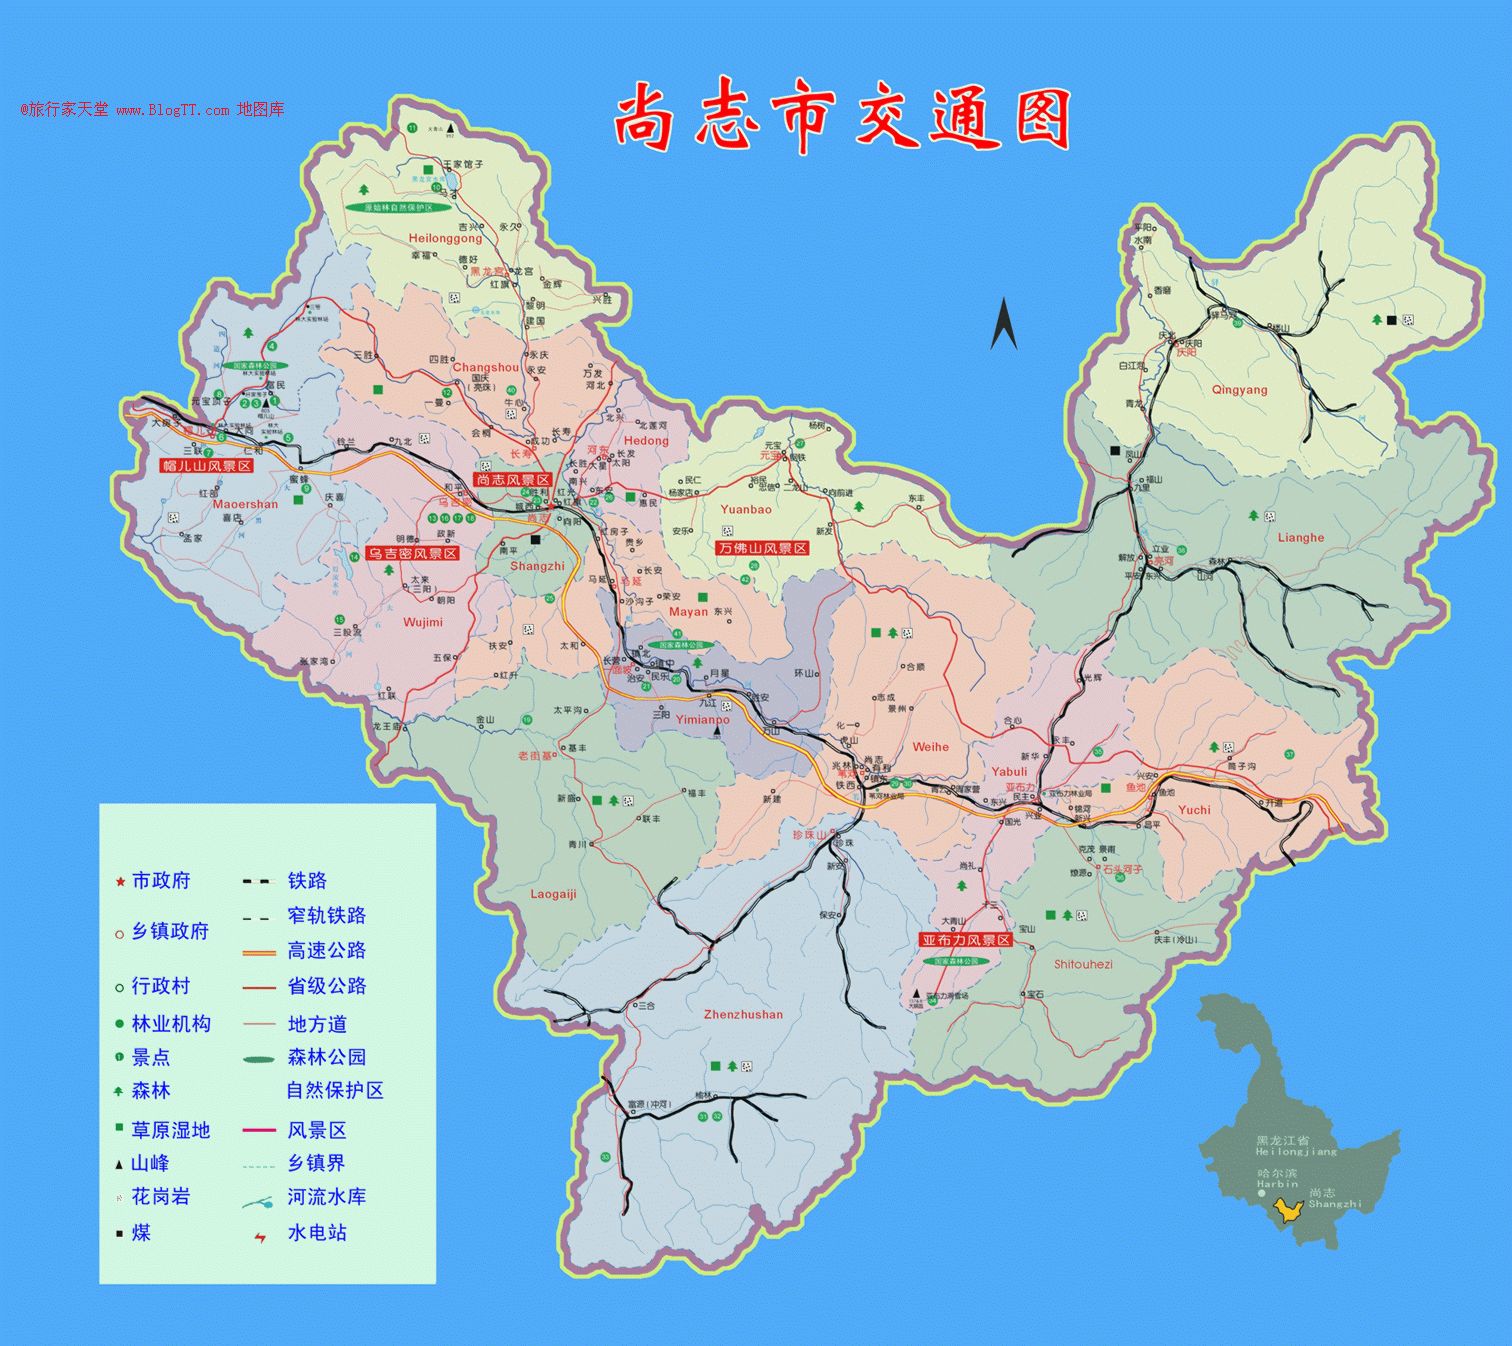 张广才岭西麓,西距省会哈尔滨市127公里,东离牡丹江市177公里,市域总图片